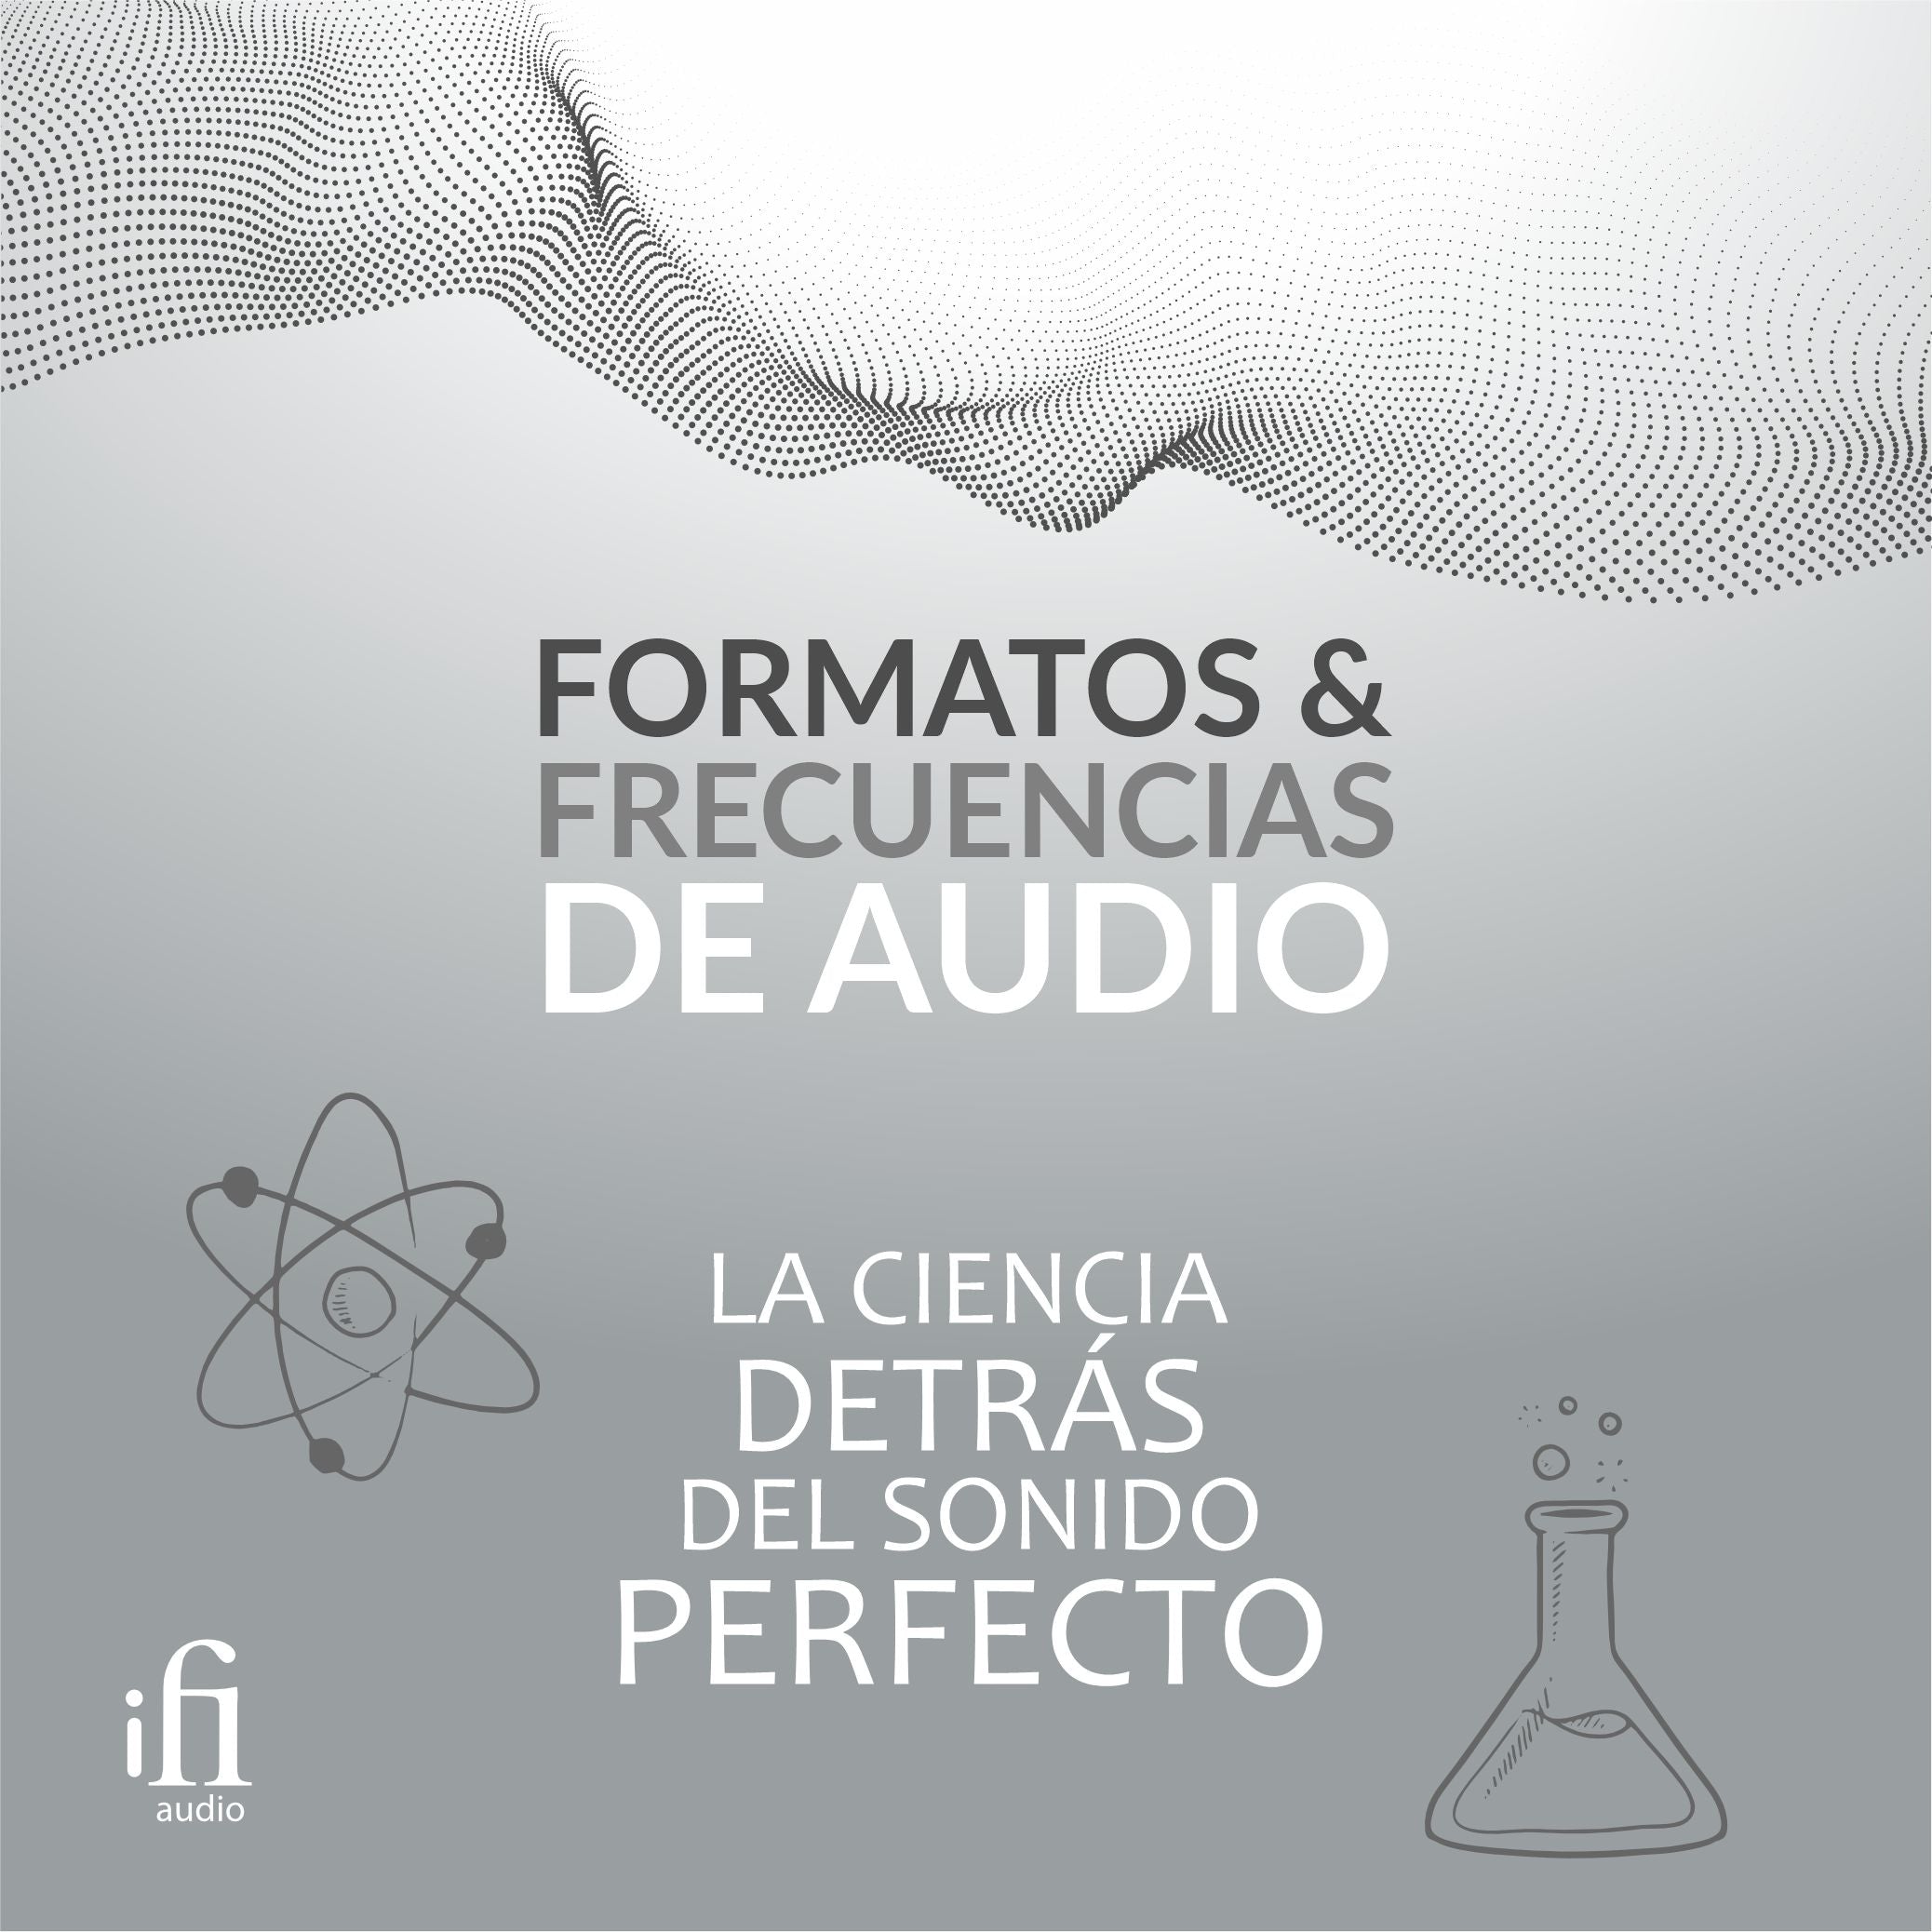 Formatos y frecuencias de audio: La ciencia detrás del sonido perfecto